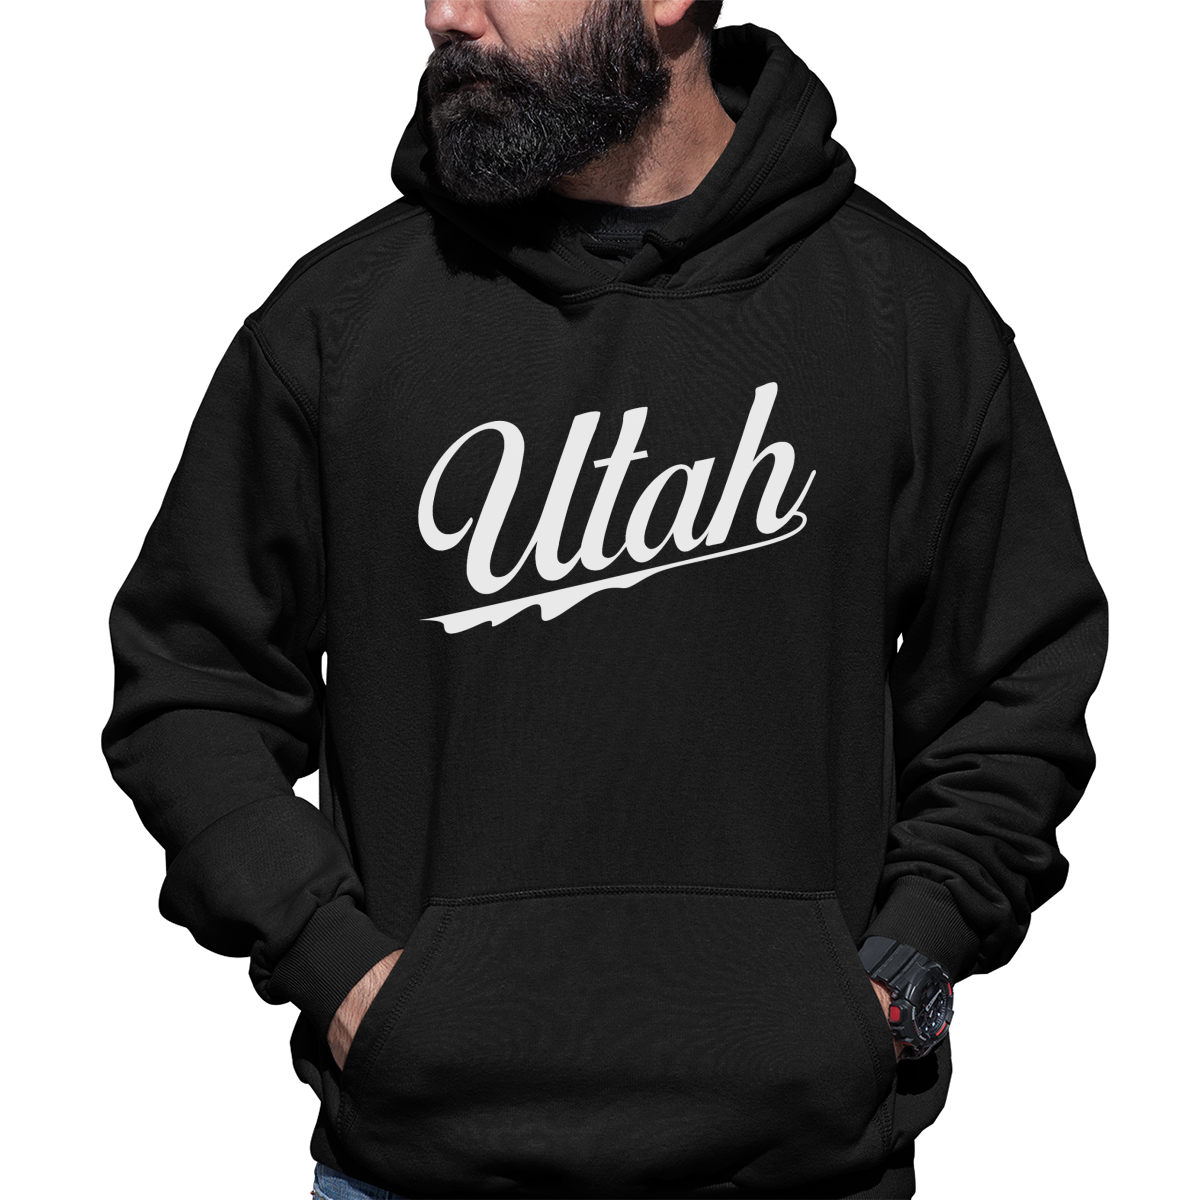 Utah Unisex Hoodie | Black